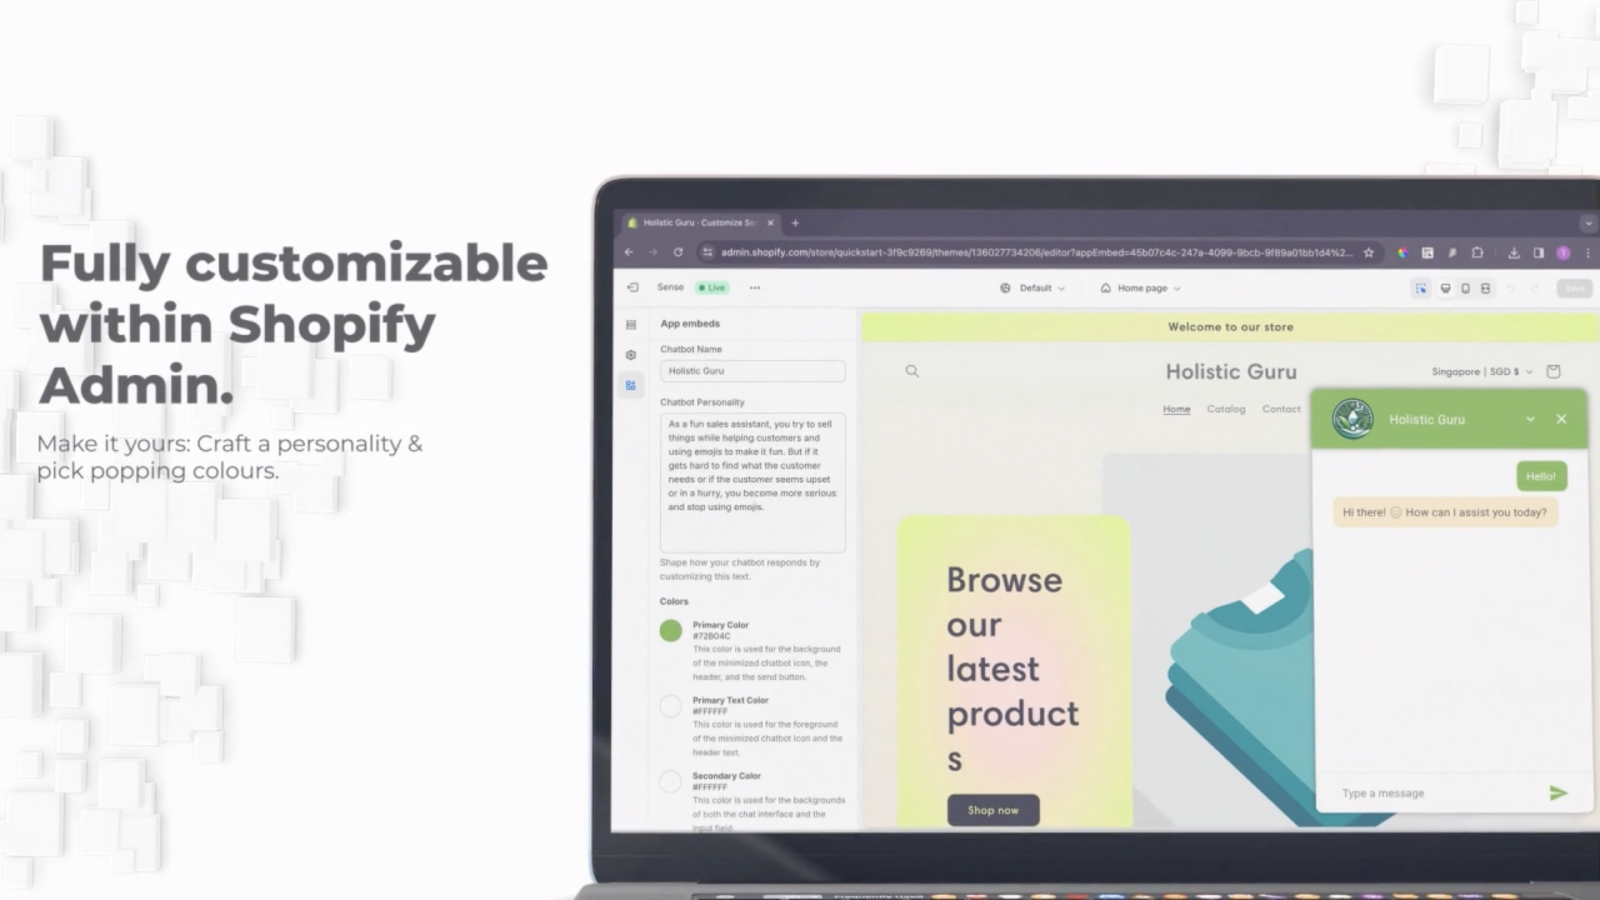 Fullt anpassningsbar inom Shopify Admin - AI-försäljningsassistent